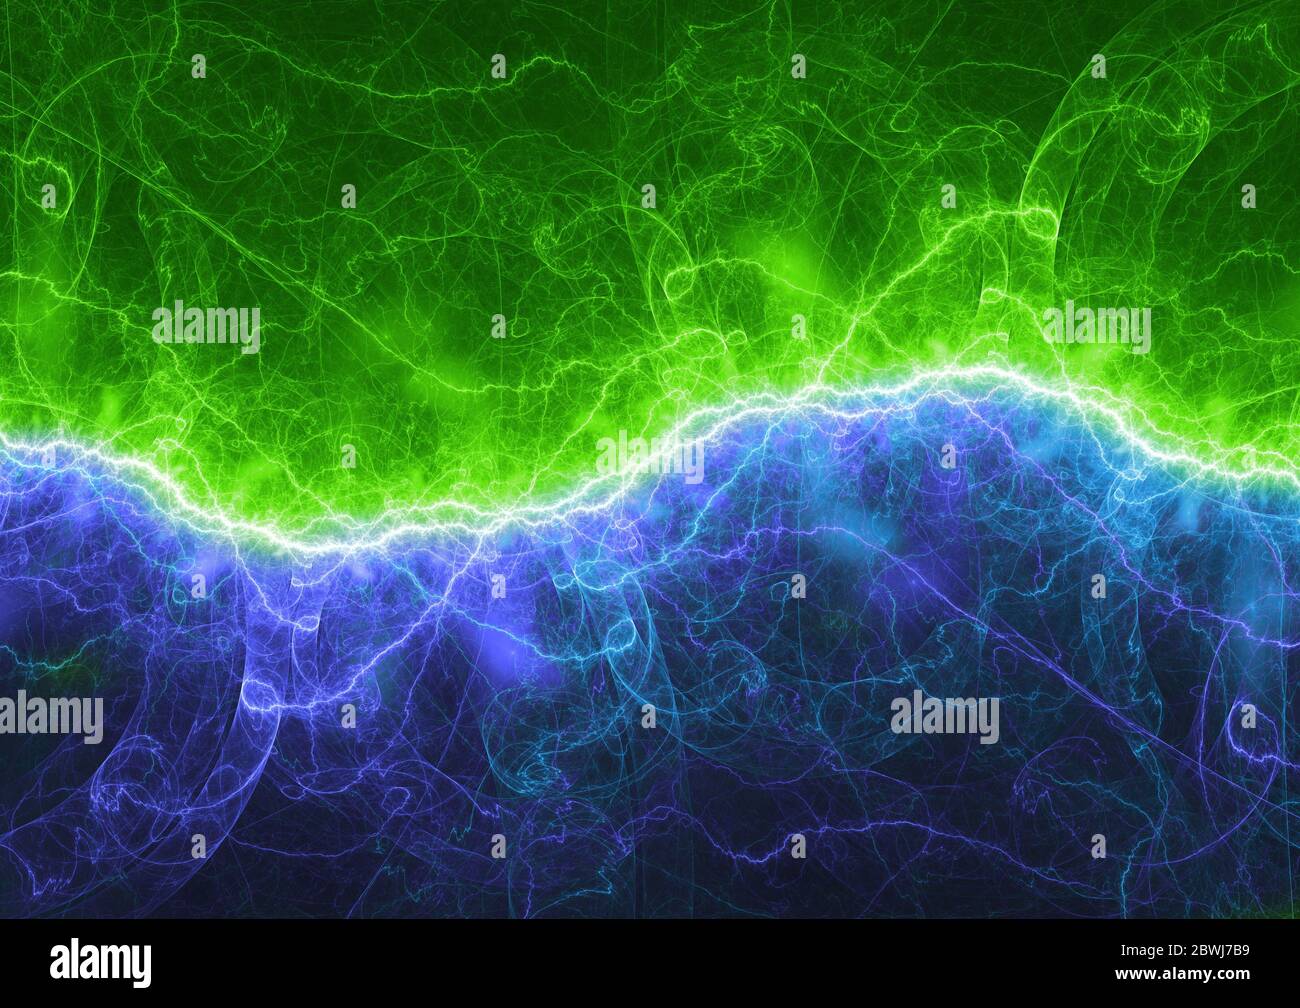 Blaue und grüne elektrische Blitz, Plasma Power Hintergrund Stockfotografie  - Alamy